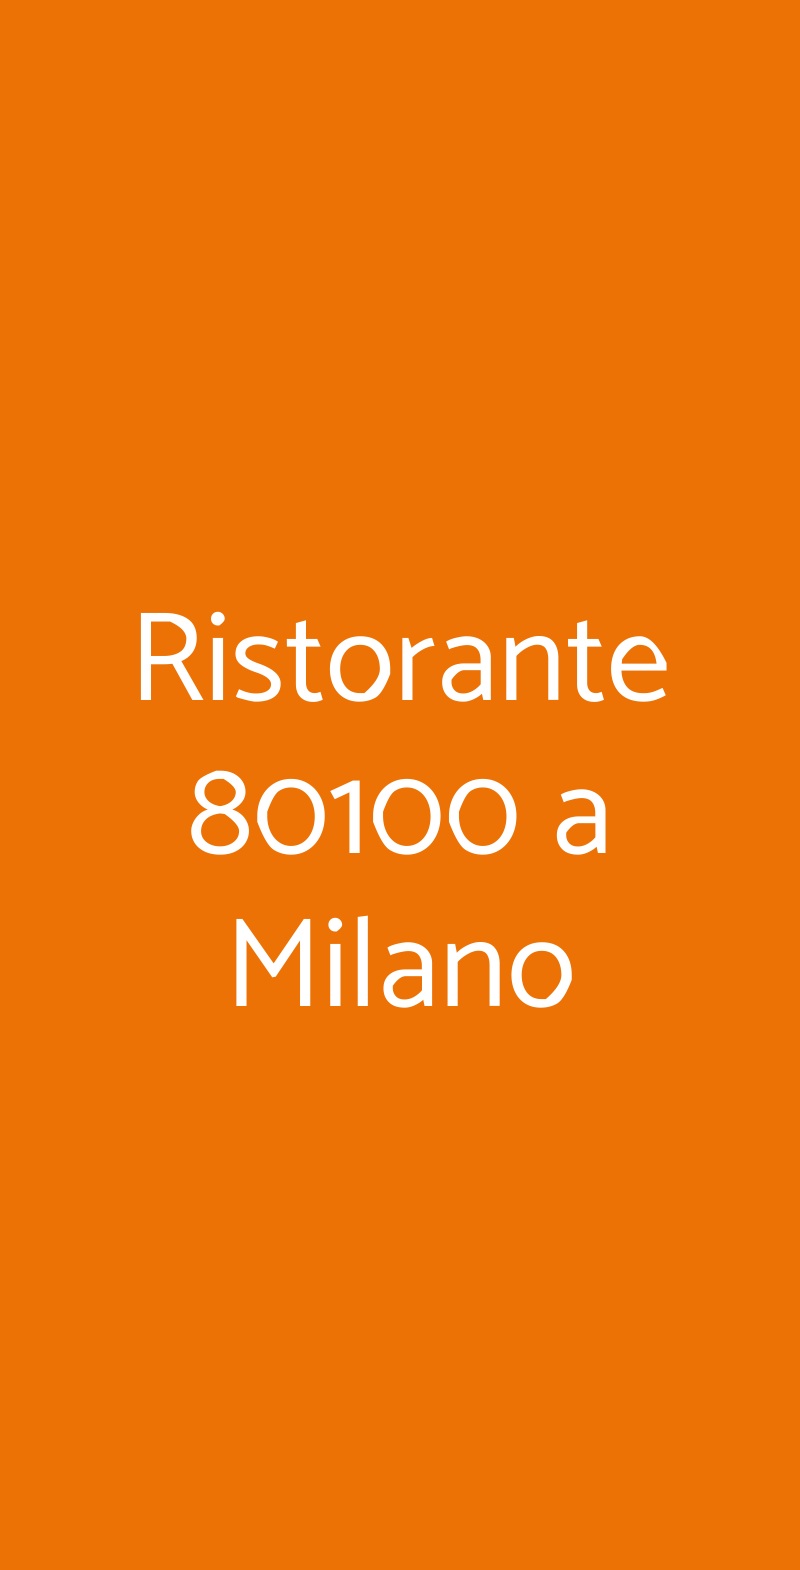 Ristorante 80100 a Milano Milano menù 1 pagina